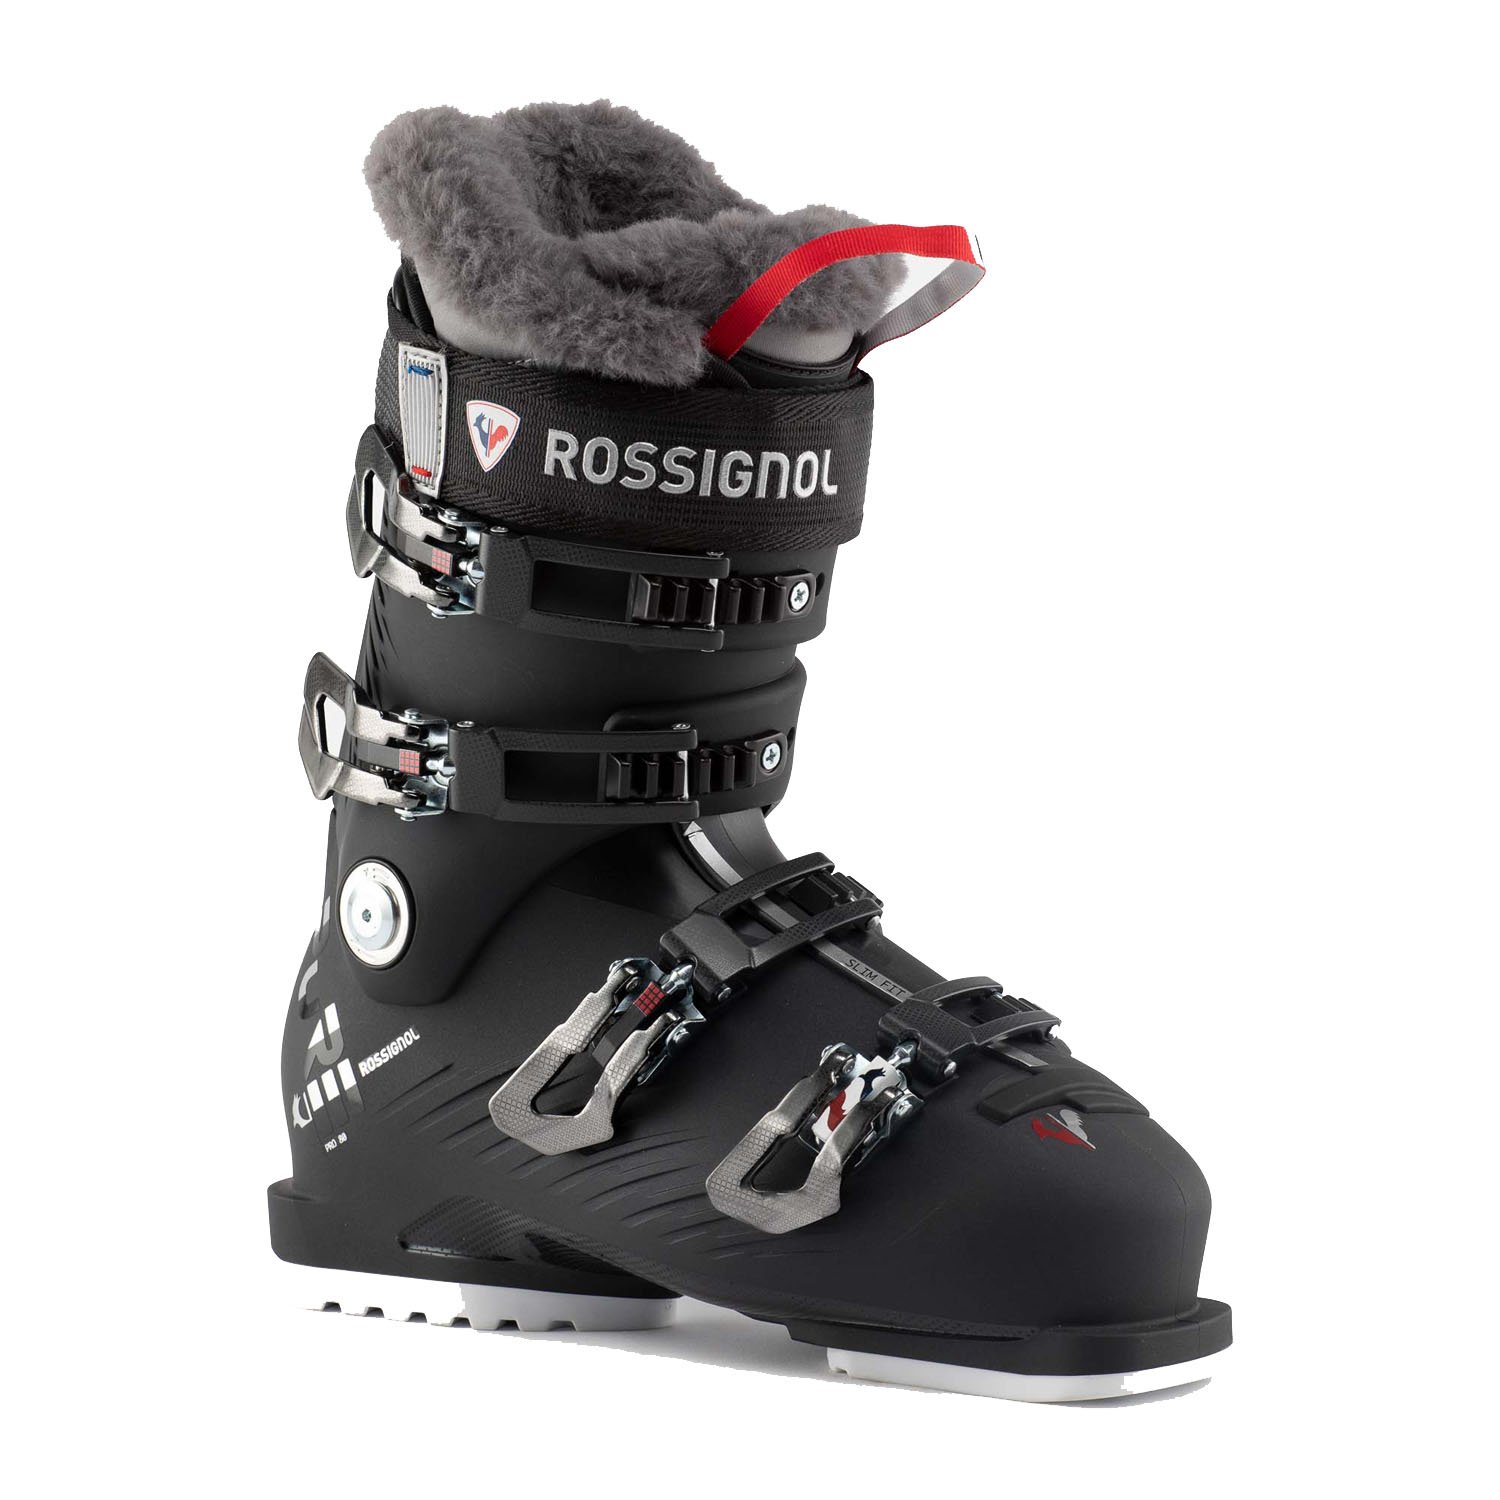 Rossignol Pure 80 Pro Kayak Ayakkabısı - Renkli - 1